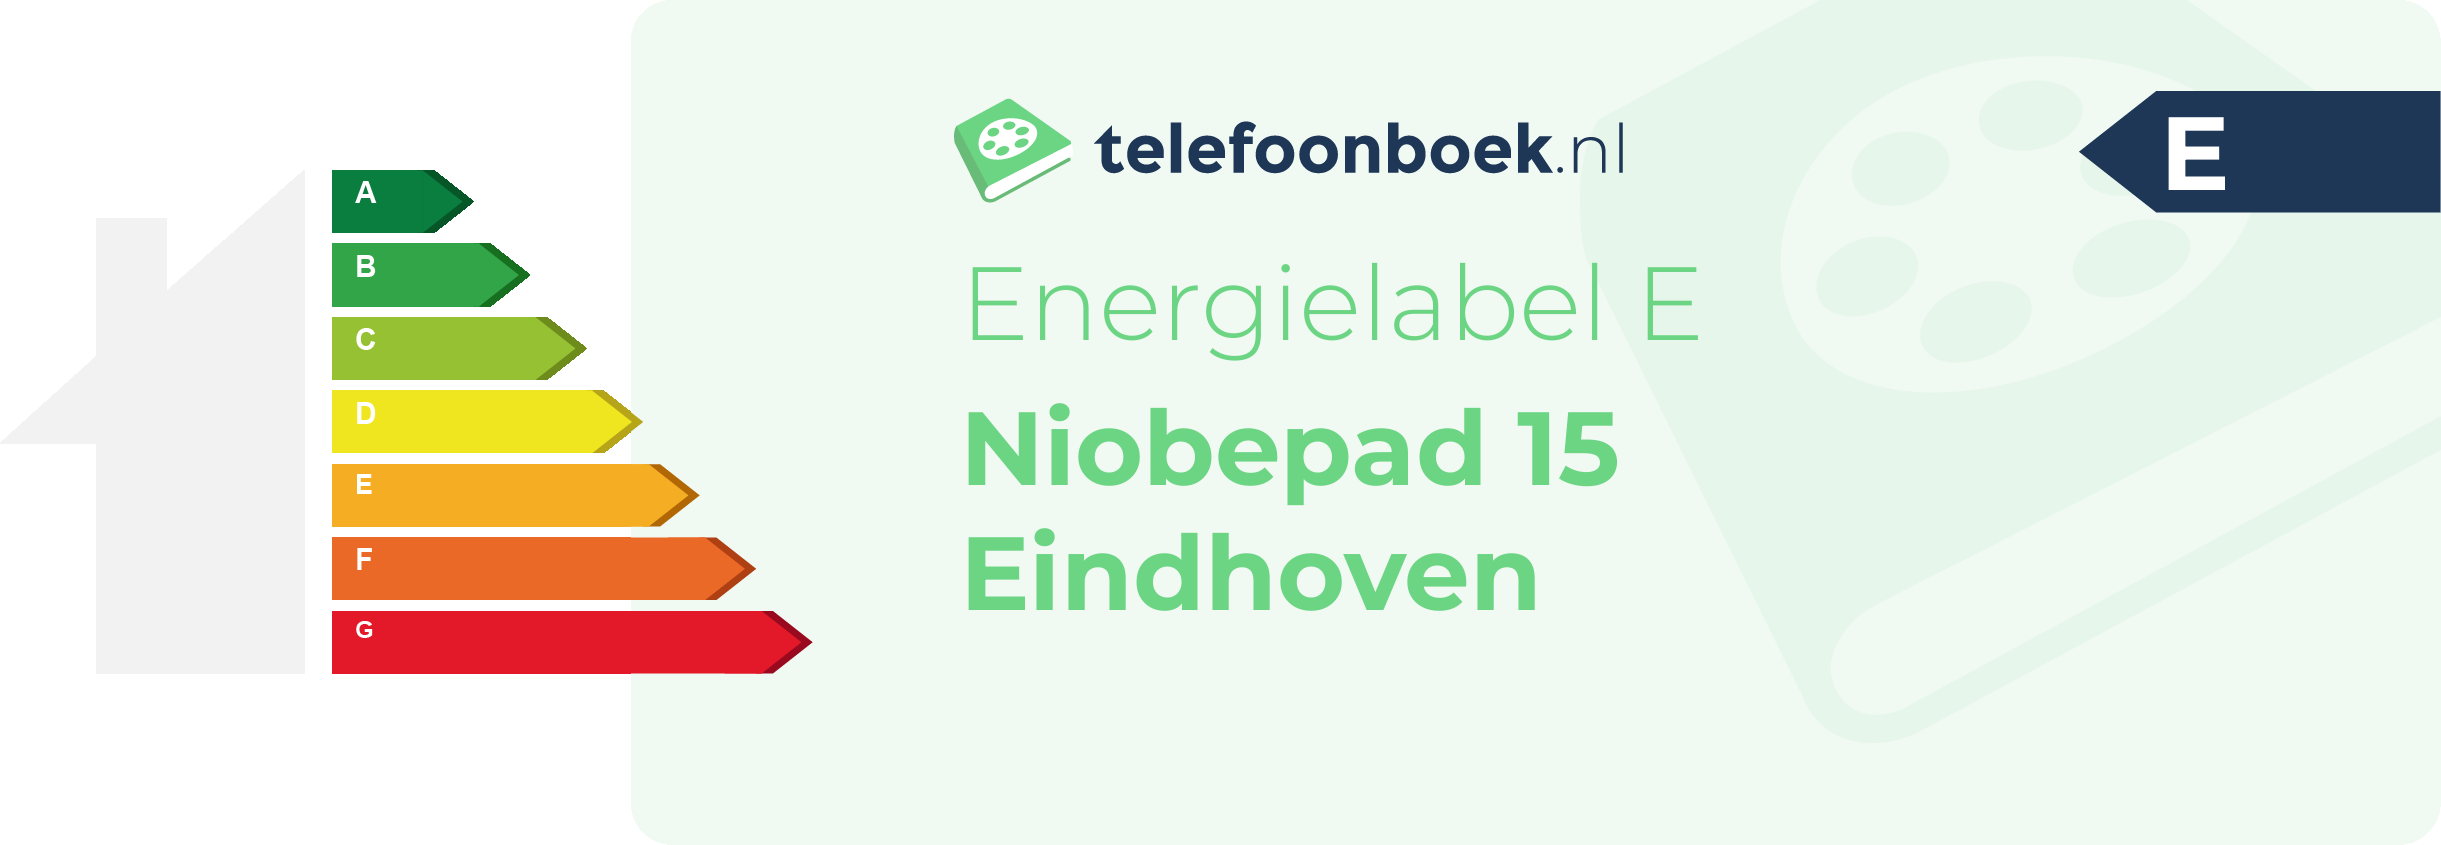 Energielabel Niobepad 15 Eindhoven